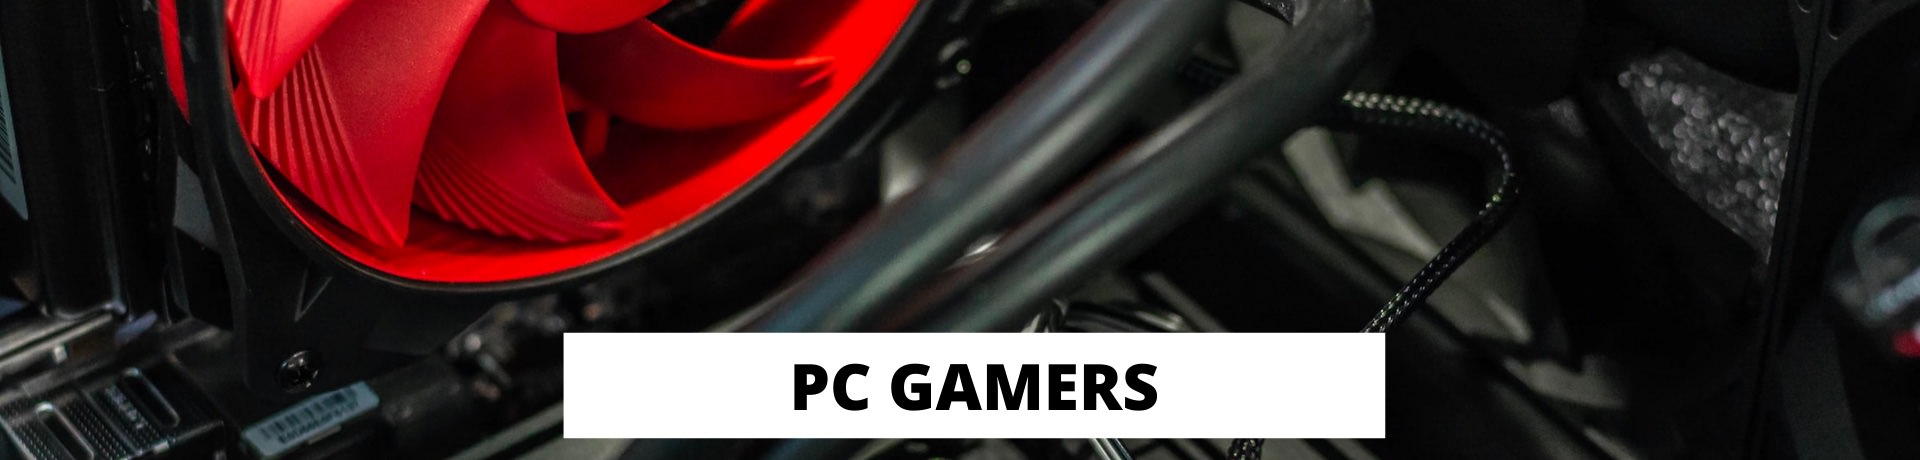 catalog/banner/pc-gamers.jpg